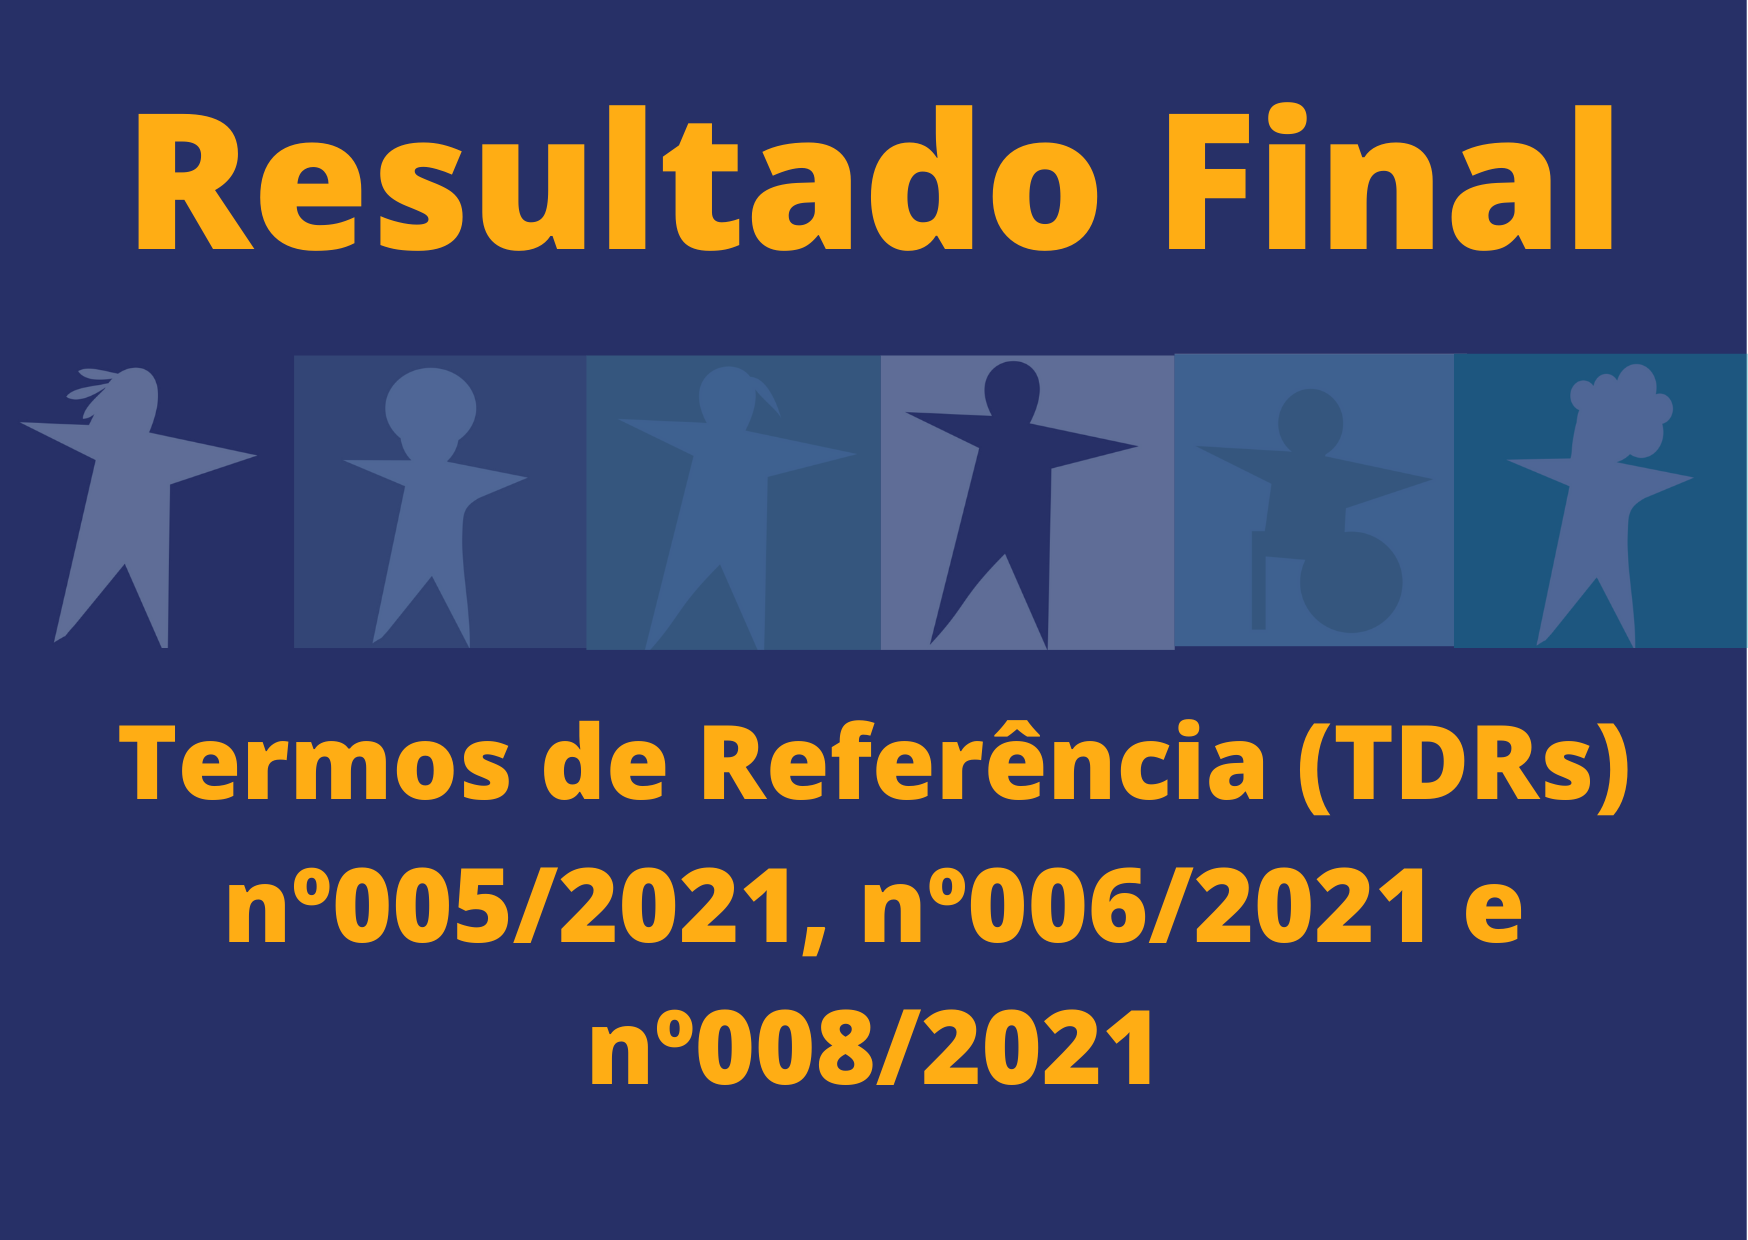 Termos de Referência (TDRs) nº005/2021, nº006/2021 e nº008/2021 – Resultado Final